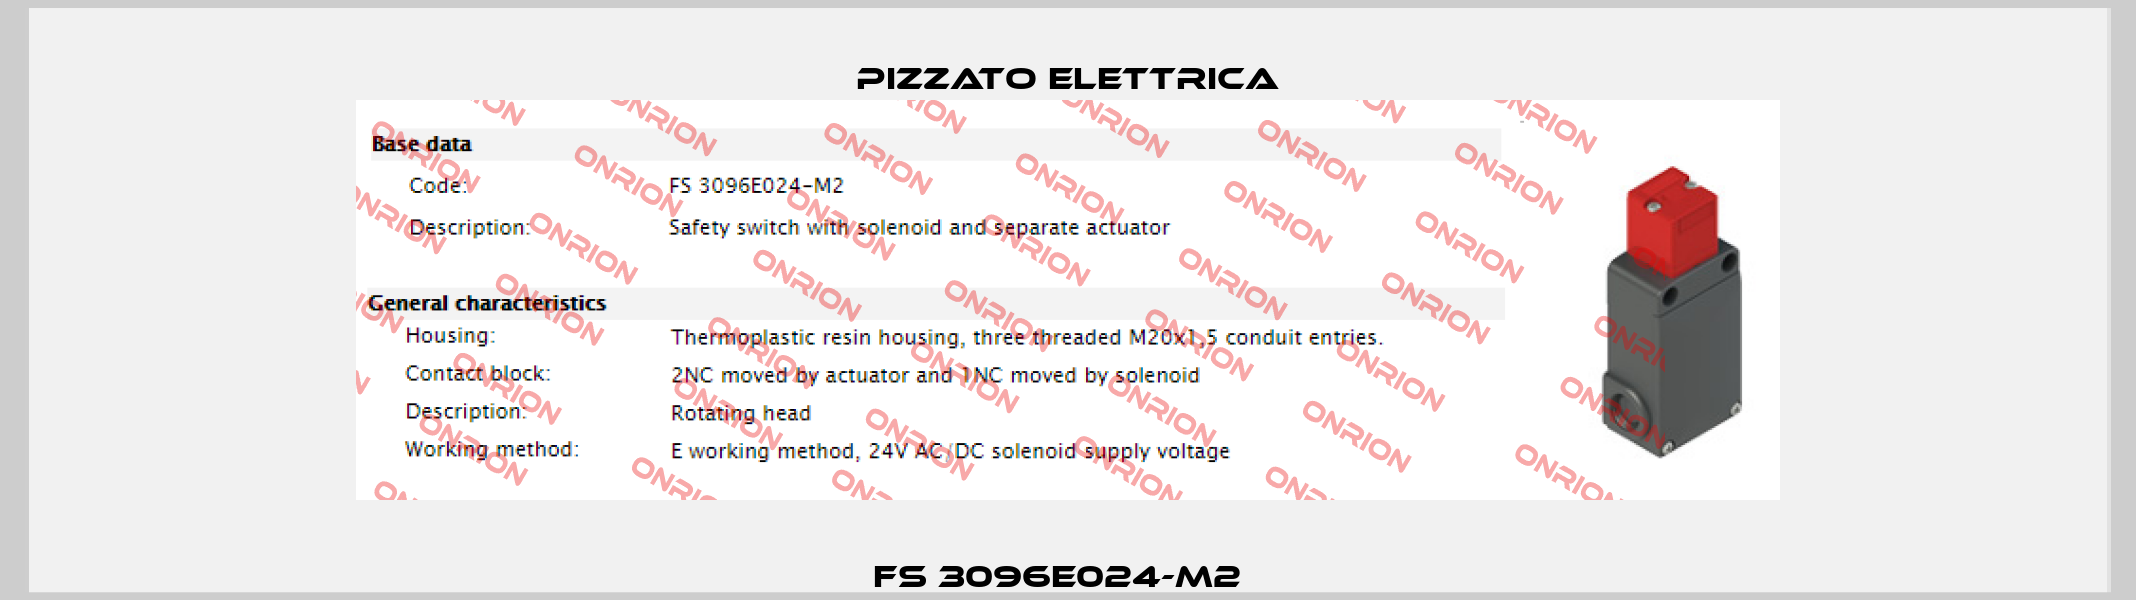 FS 3096E024-M2   Pizzato Elettrica